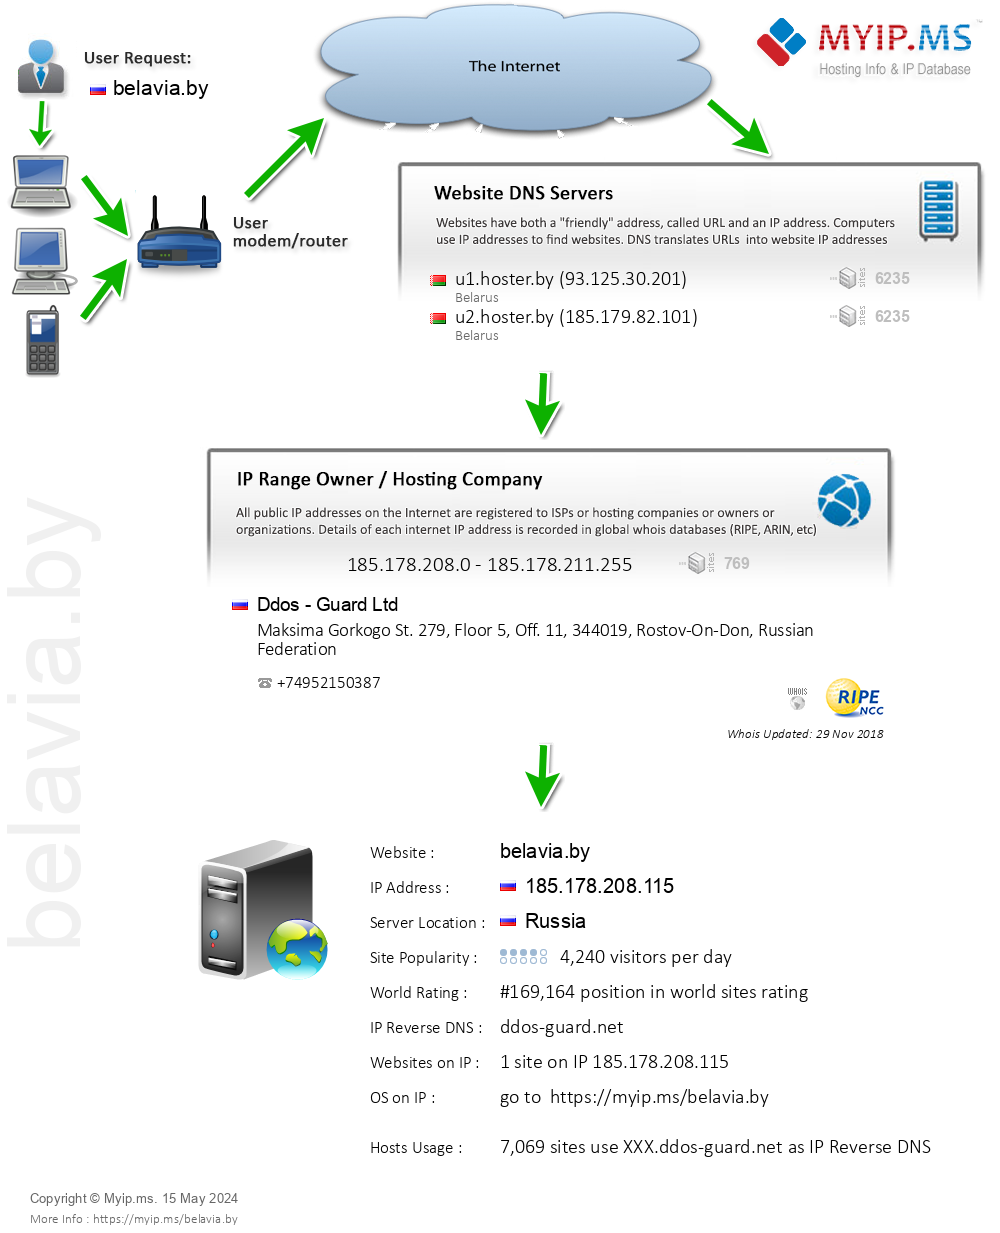 Belavia.by - Website Hosting Visual IP Diagram